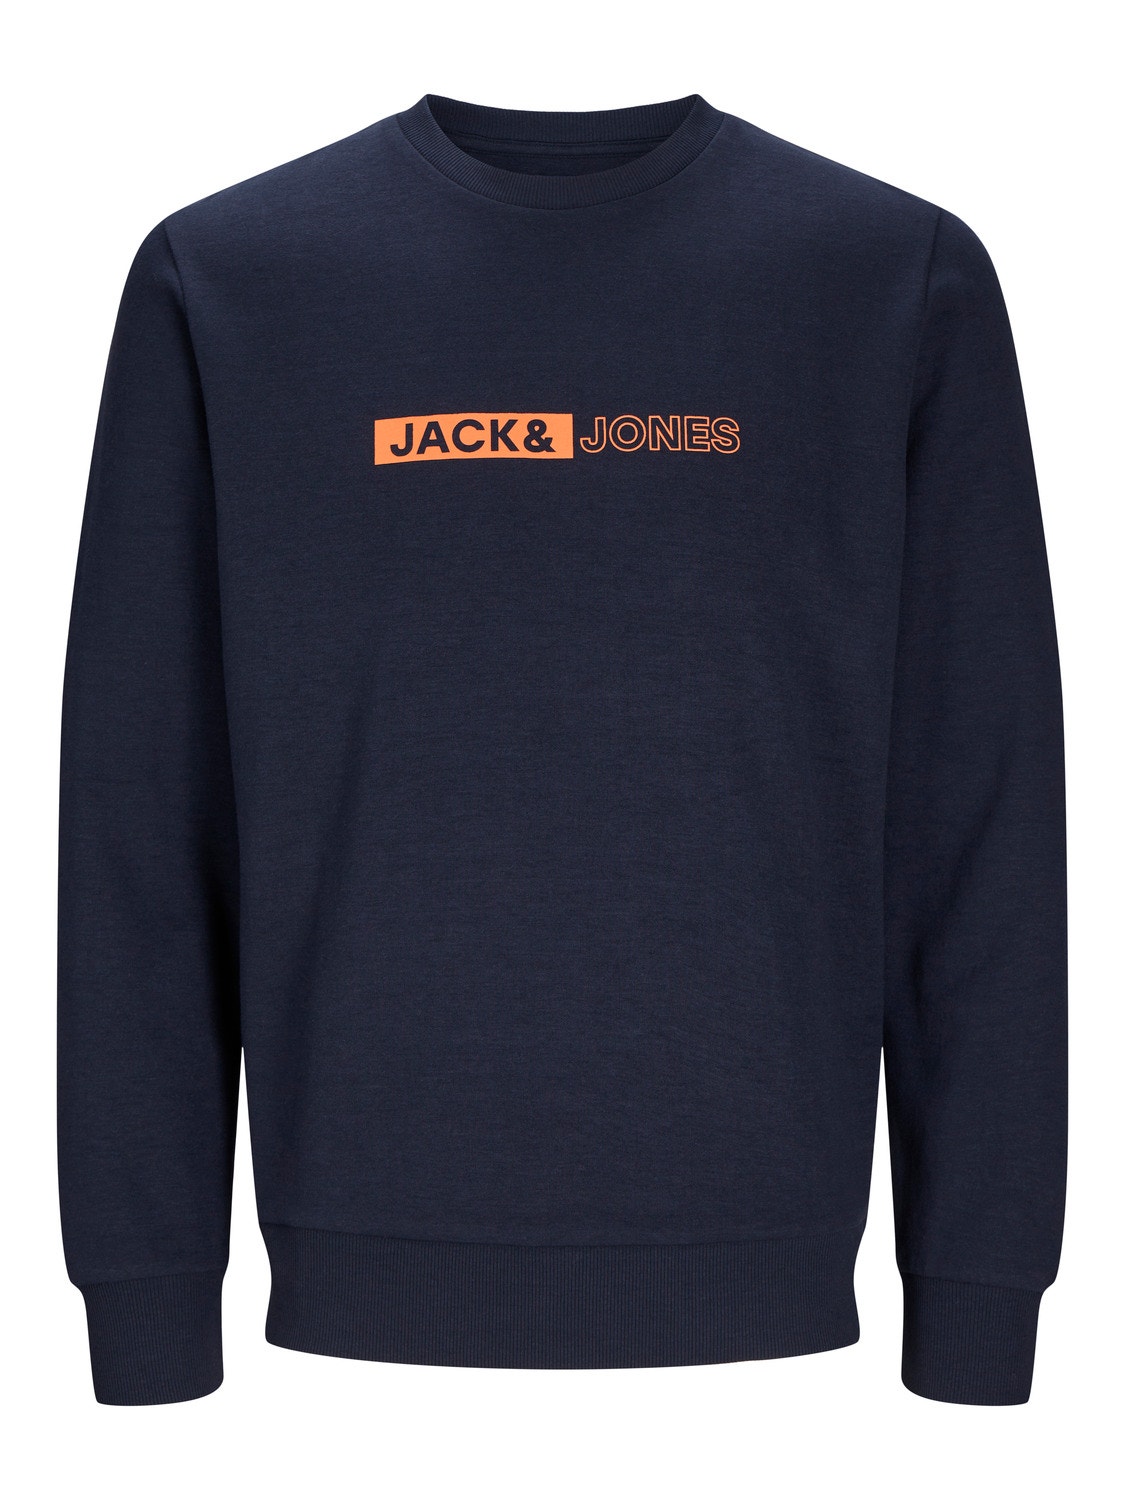 Jack & Jones Logo Crew neck Sweatshirt -Sky Captain - 12255067